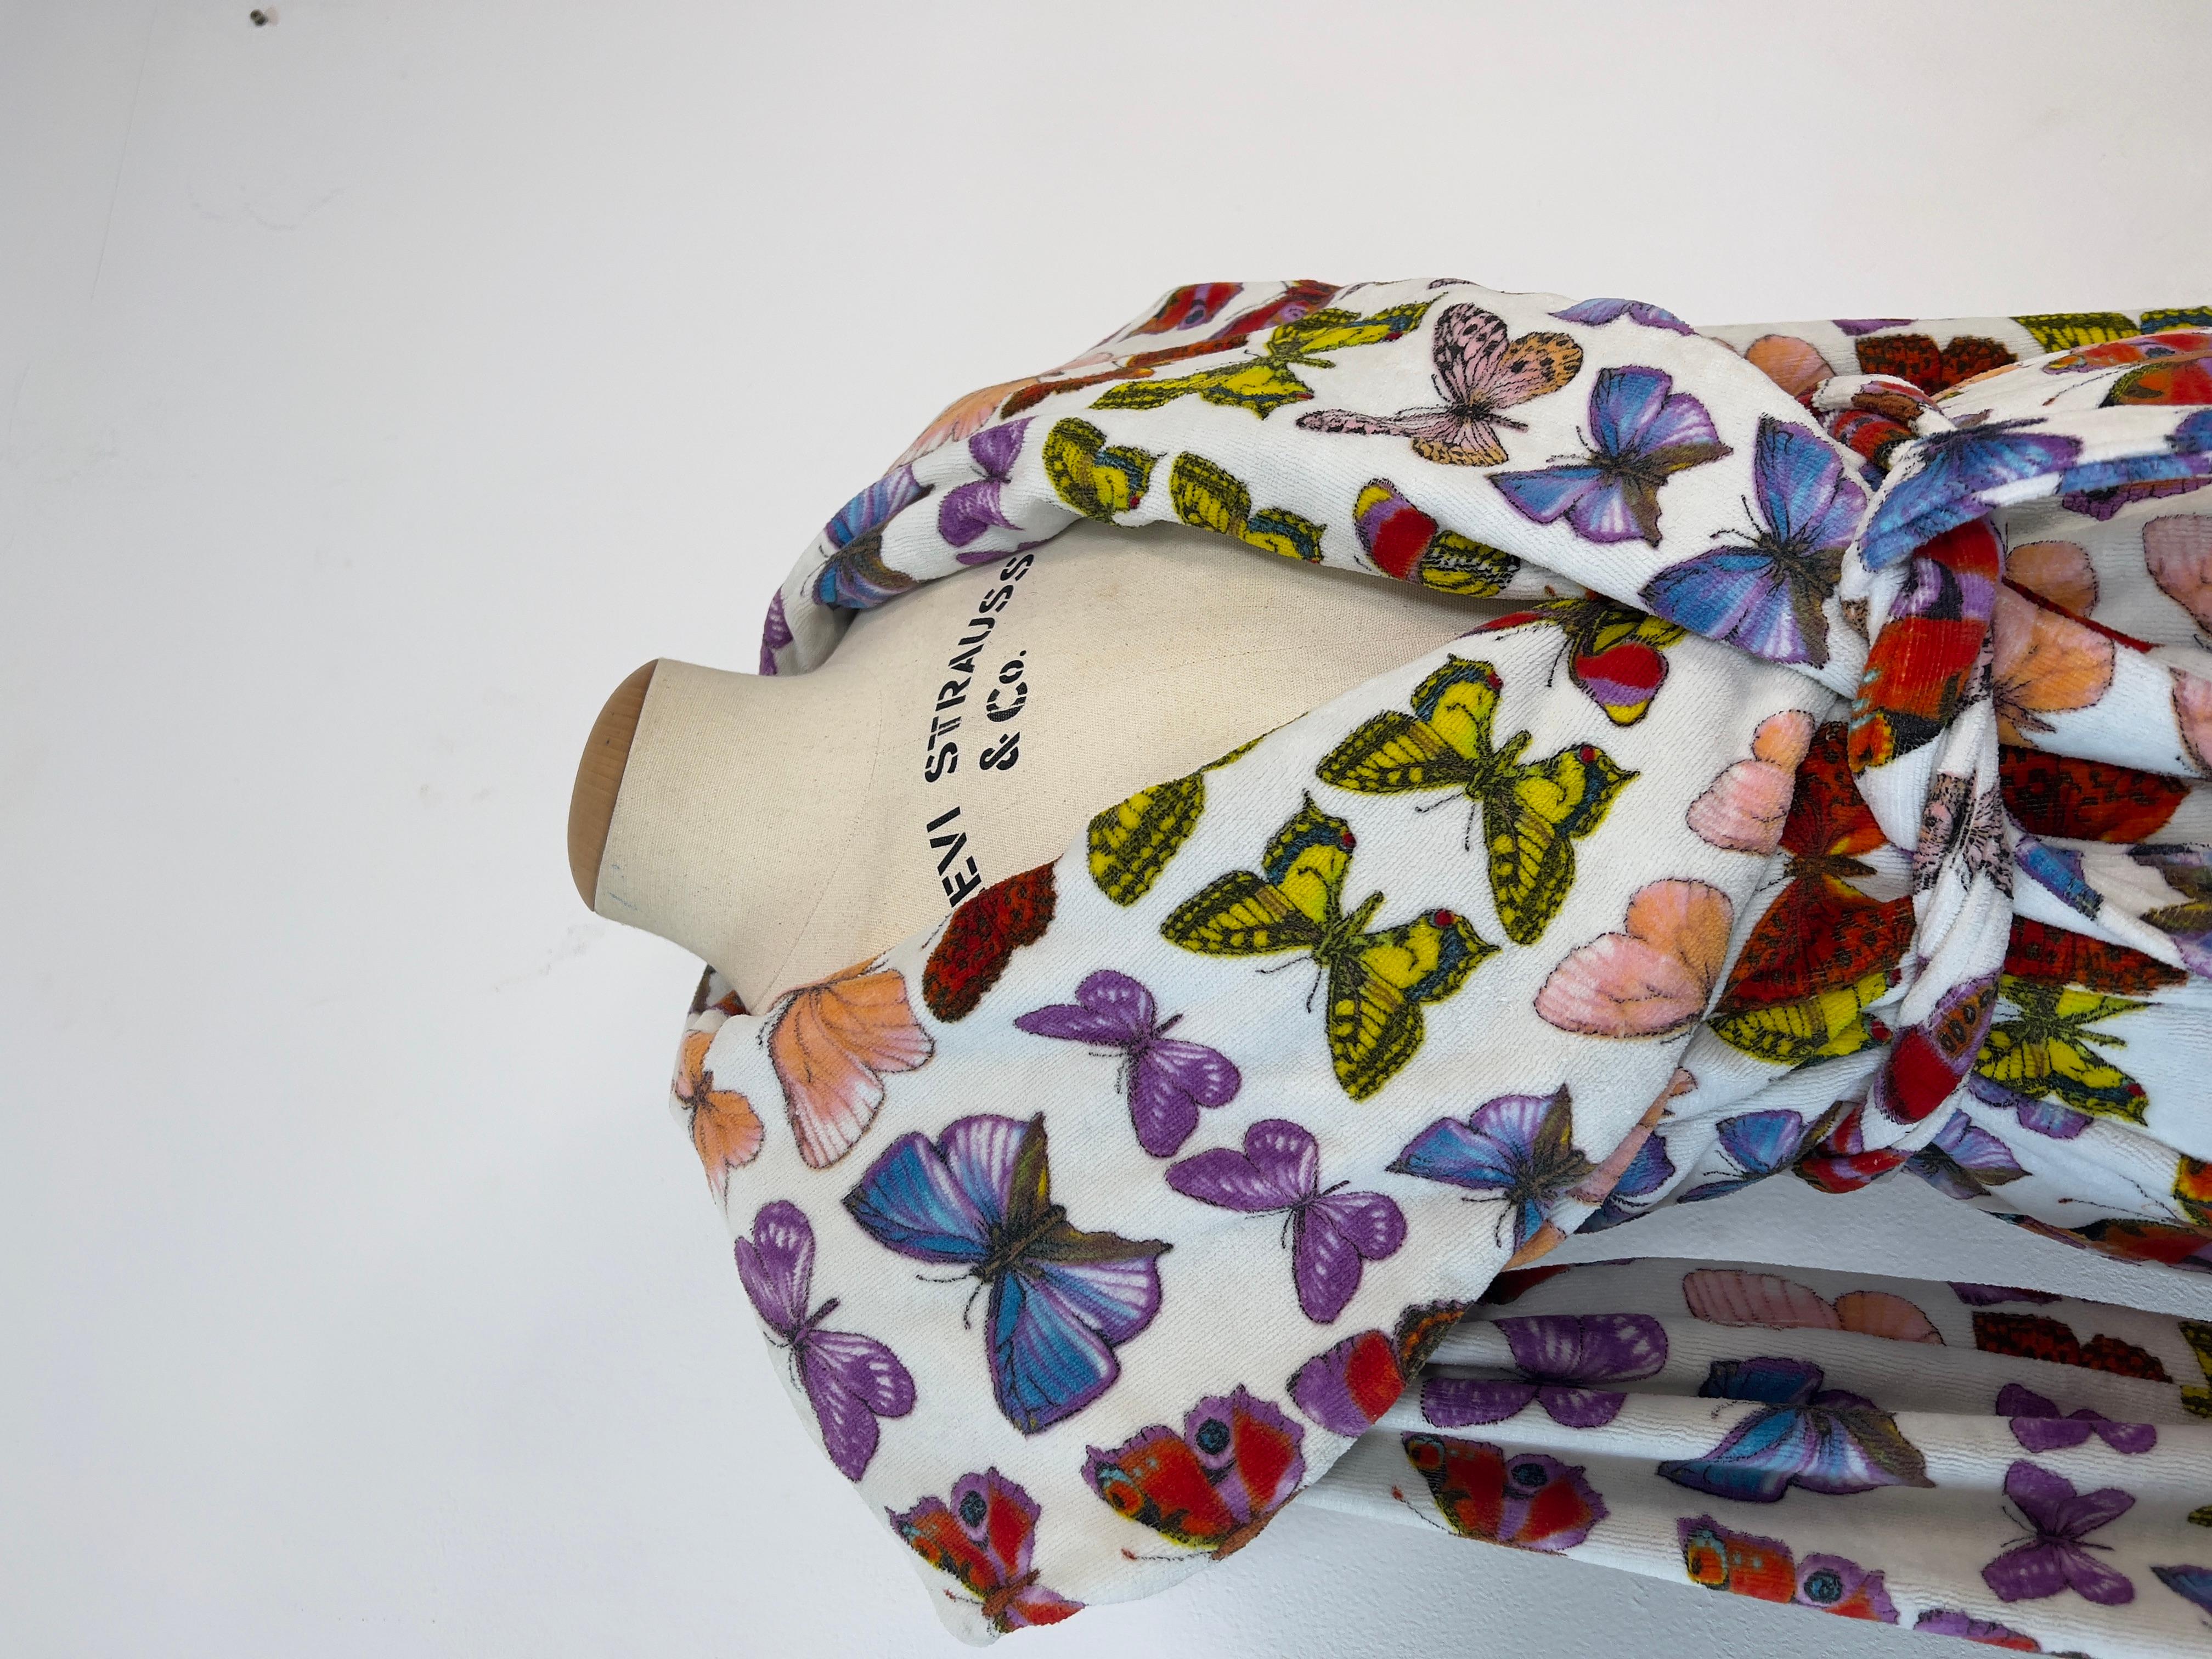 Bademantel aus Baumwolle im 90er-Jahre-Stil von Gianni Versace mit dem kultigen Schmetterlingsprint. Diese Robe war sowohl auf dem Laufsteg als auch auf den Werbefotos der Saison zu sehen. Der ikonische Druck wurde 2018 neu aufgelegt. Das Gewand